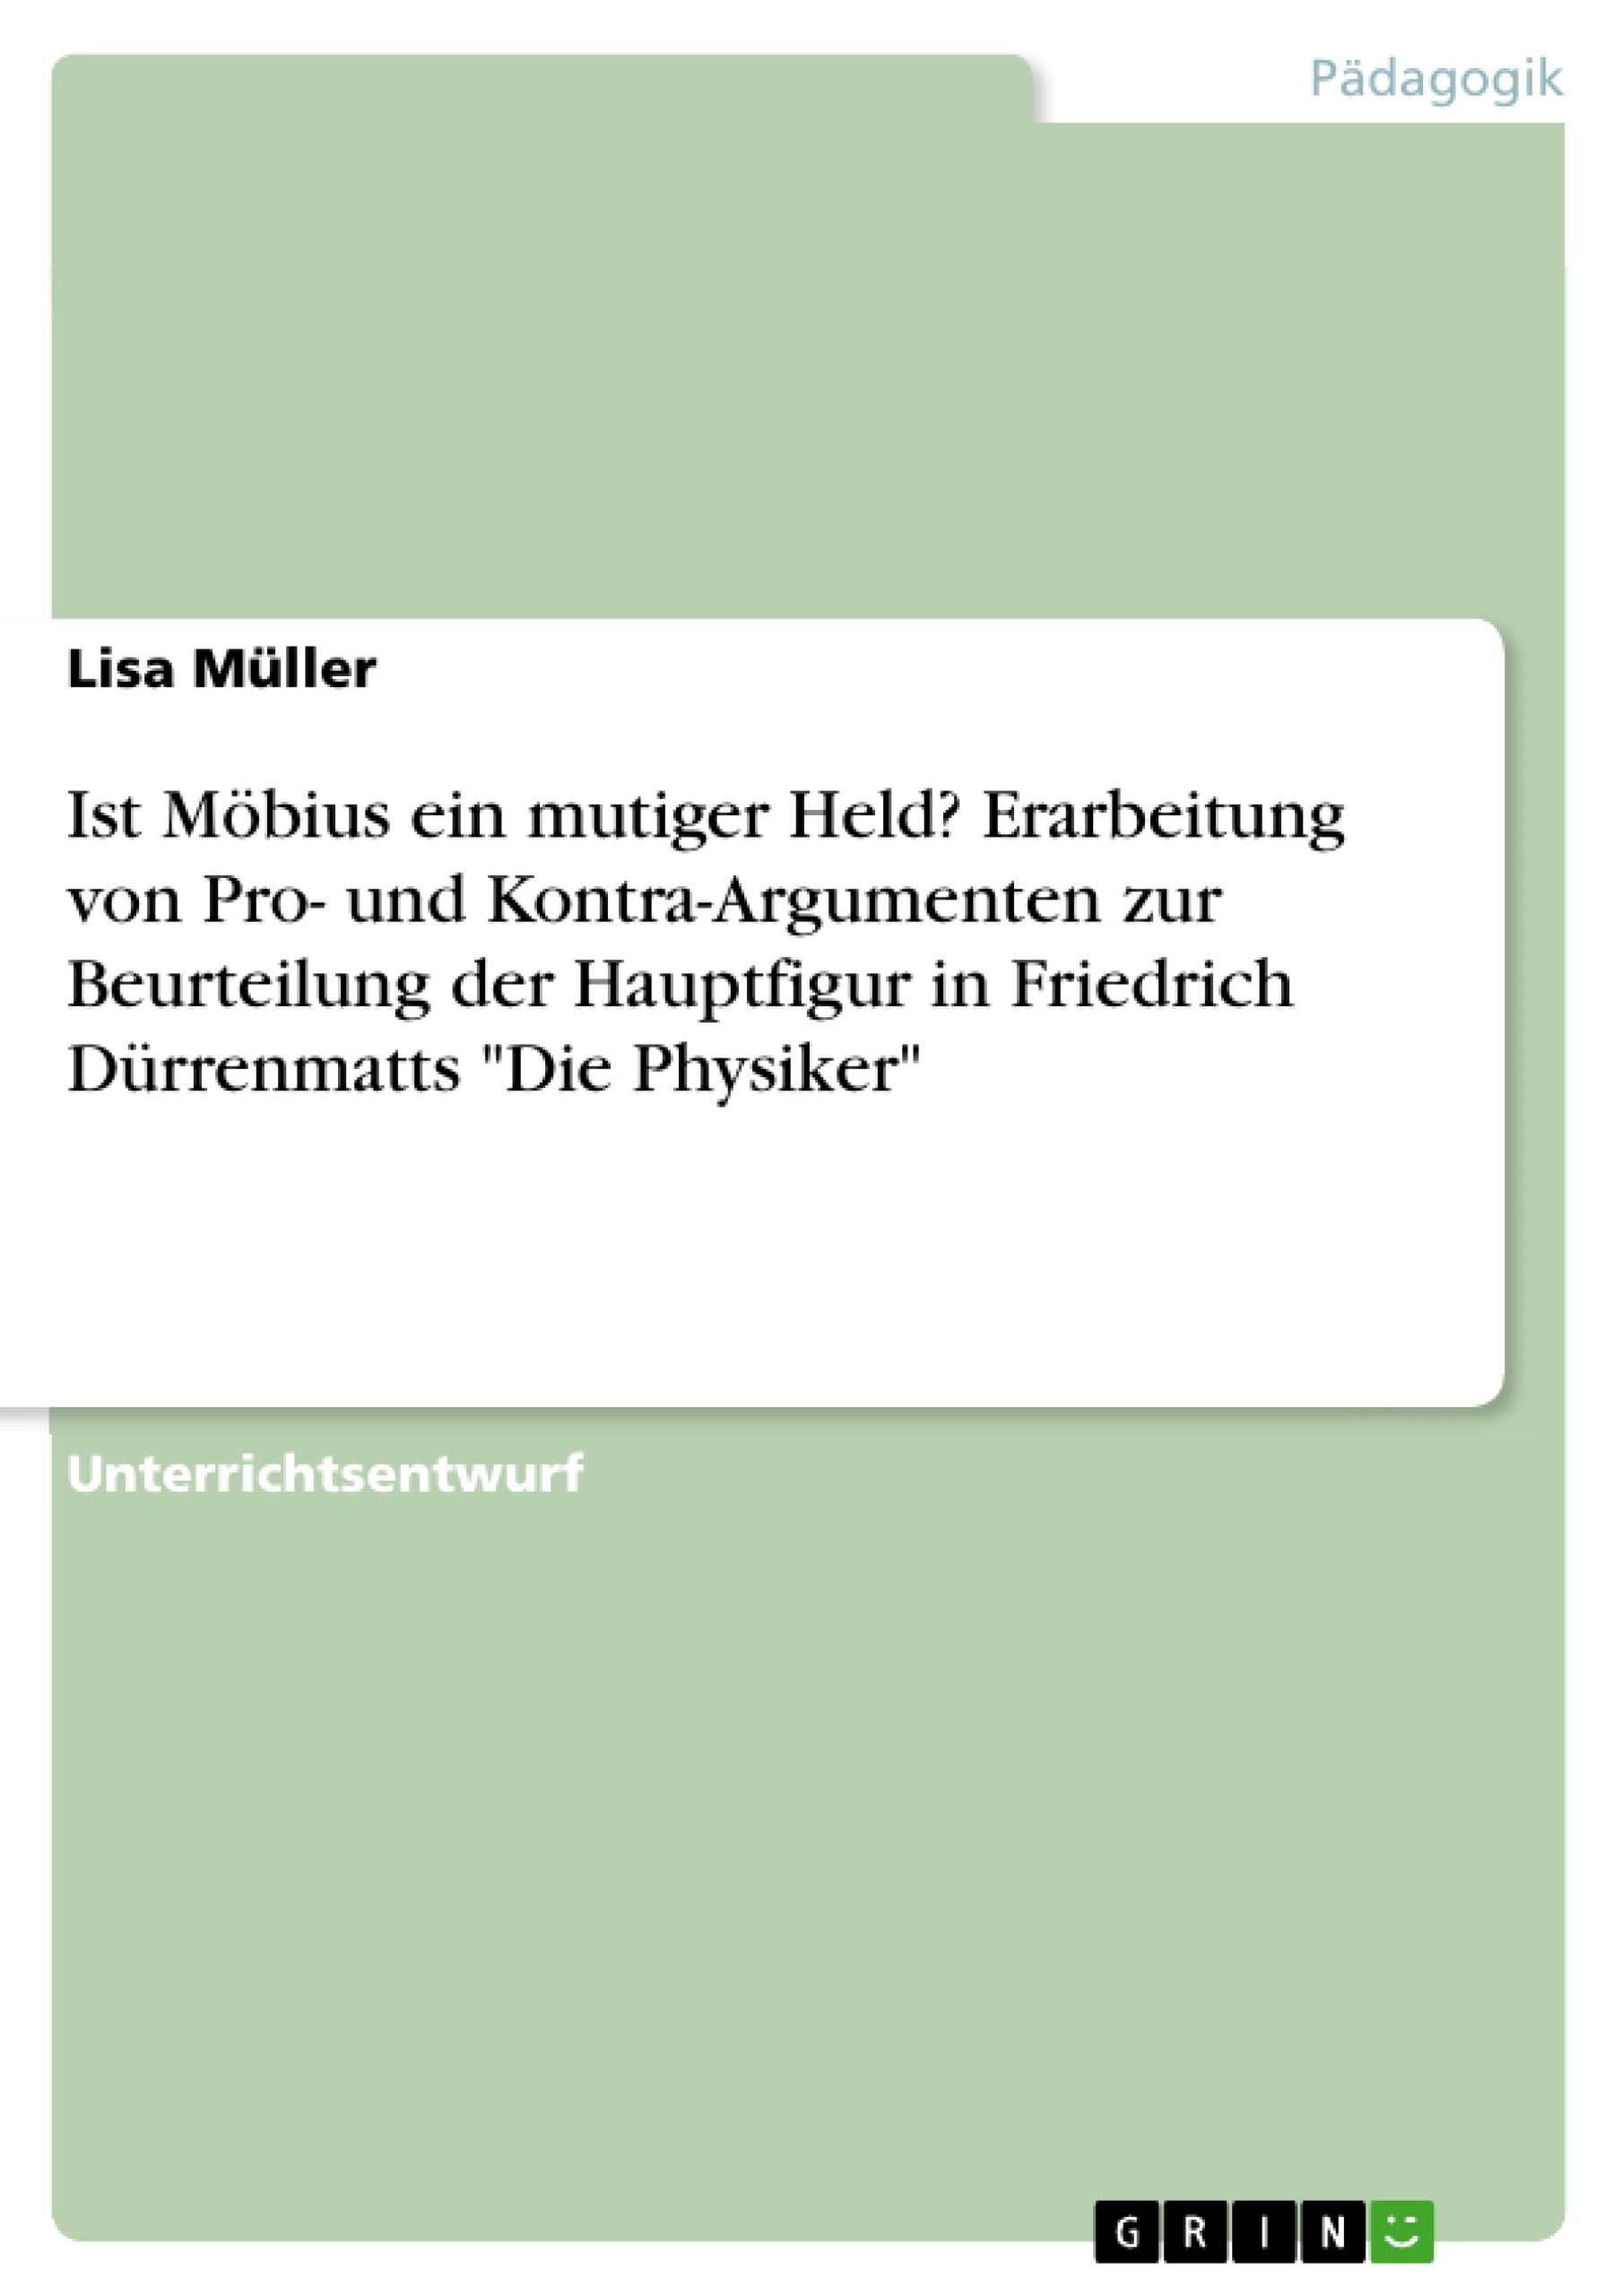 Titre: Ist Möbius ein mutiger Held? Erarbeitung von Pro- und Kontra-Argumenten zur Beurteilung der Hauptfigur in Friedrich Dürrenmatts "Die Physiker"